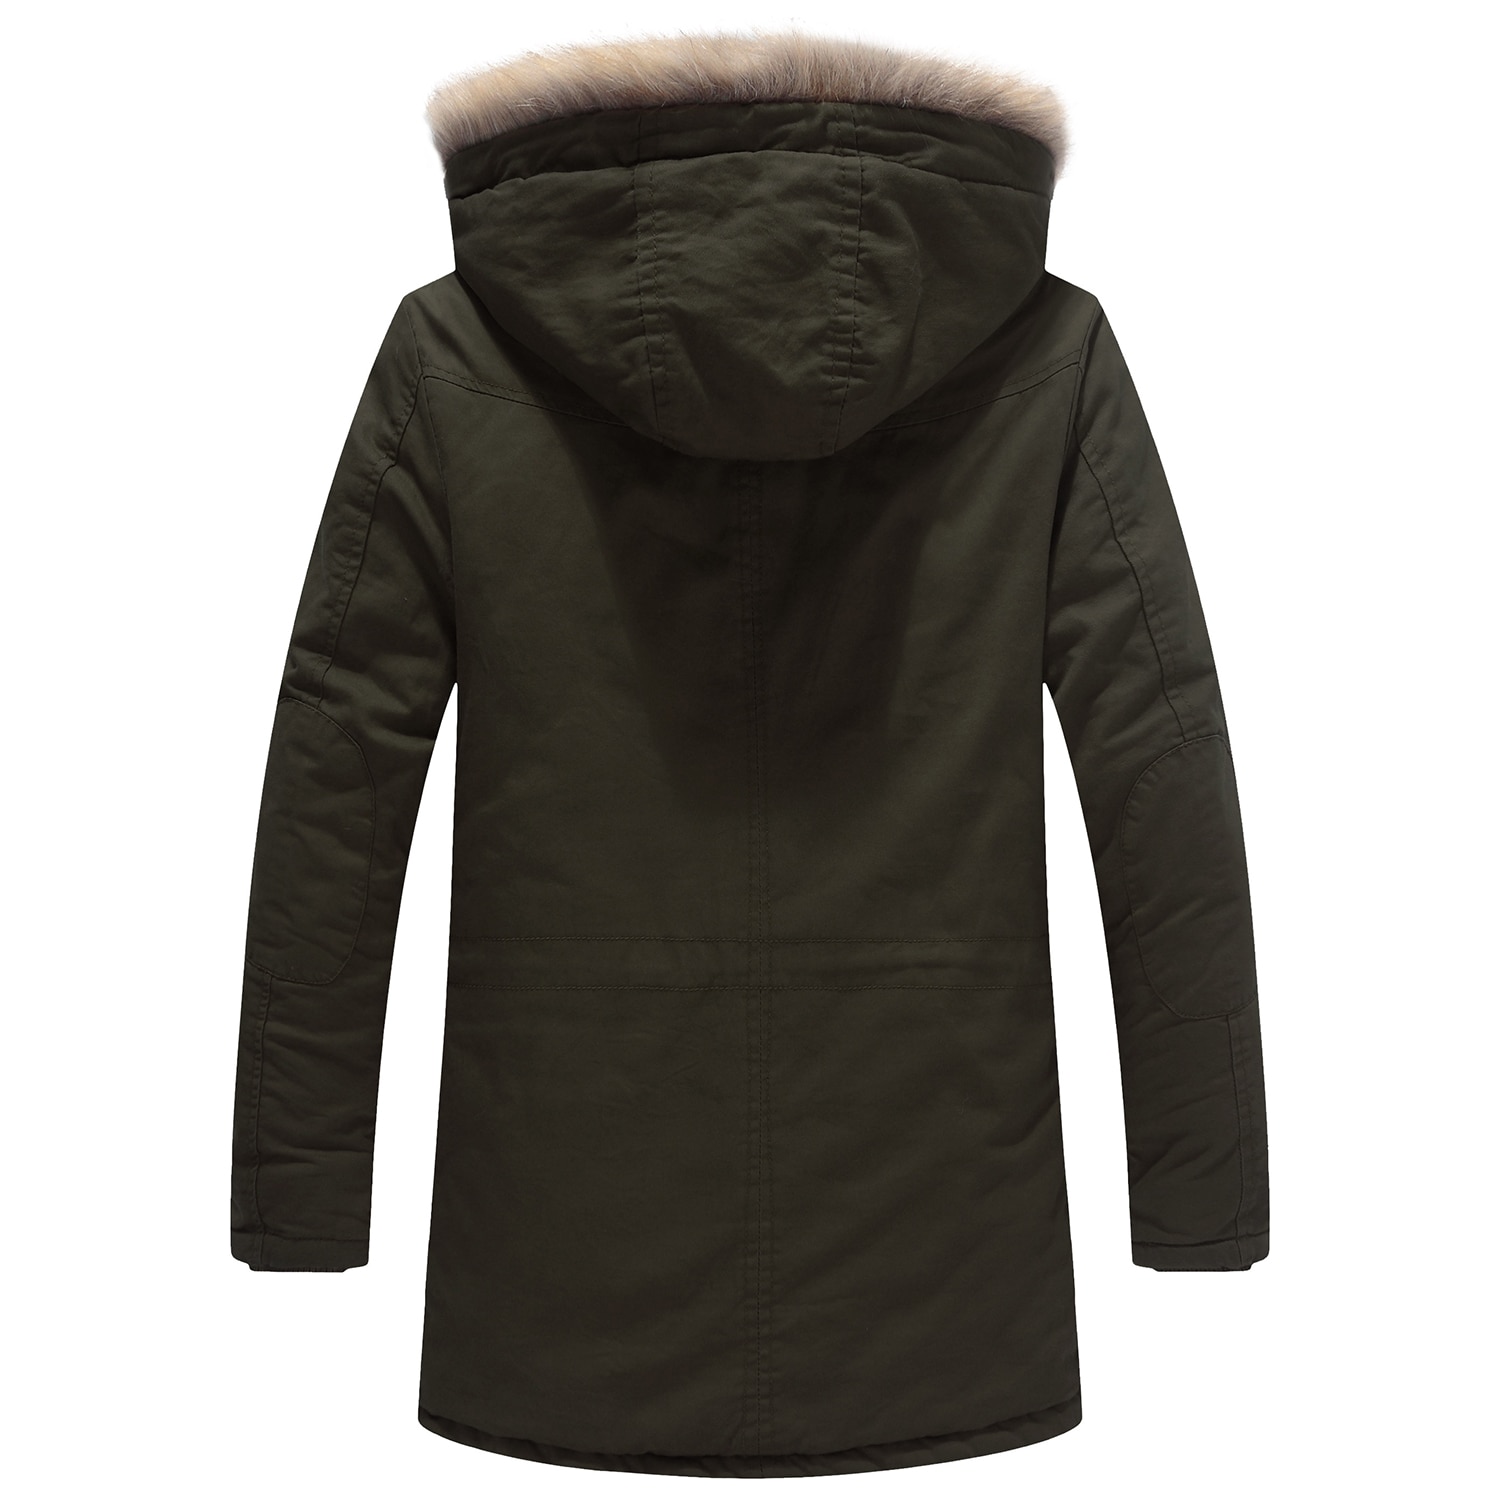 Men's Winter Jacket with Detachable Hood